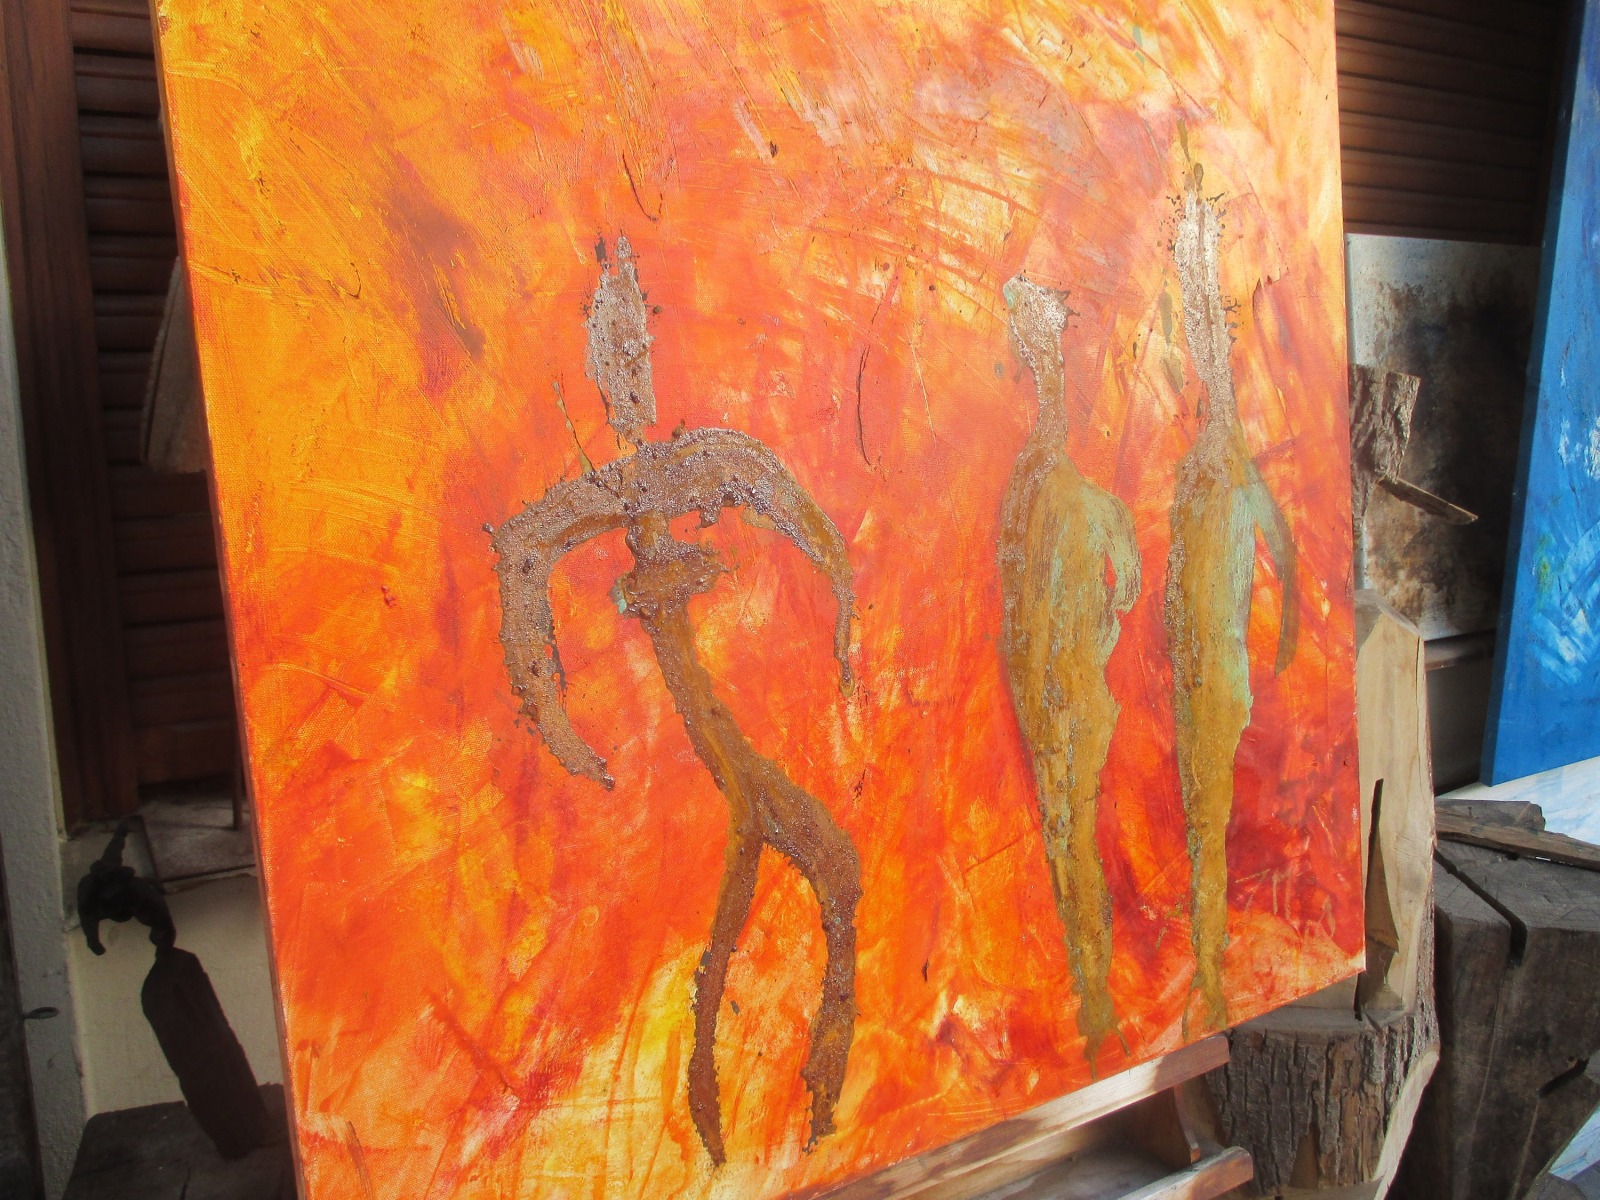 Abstrakte Tänzer Rost Orange Feuer 80x80 cm Oelmalerei expressive informele Malerei 5